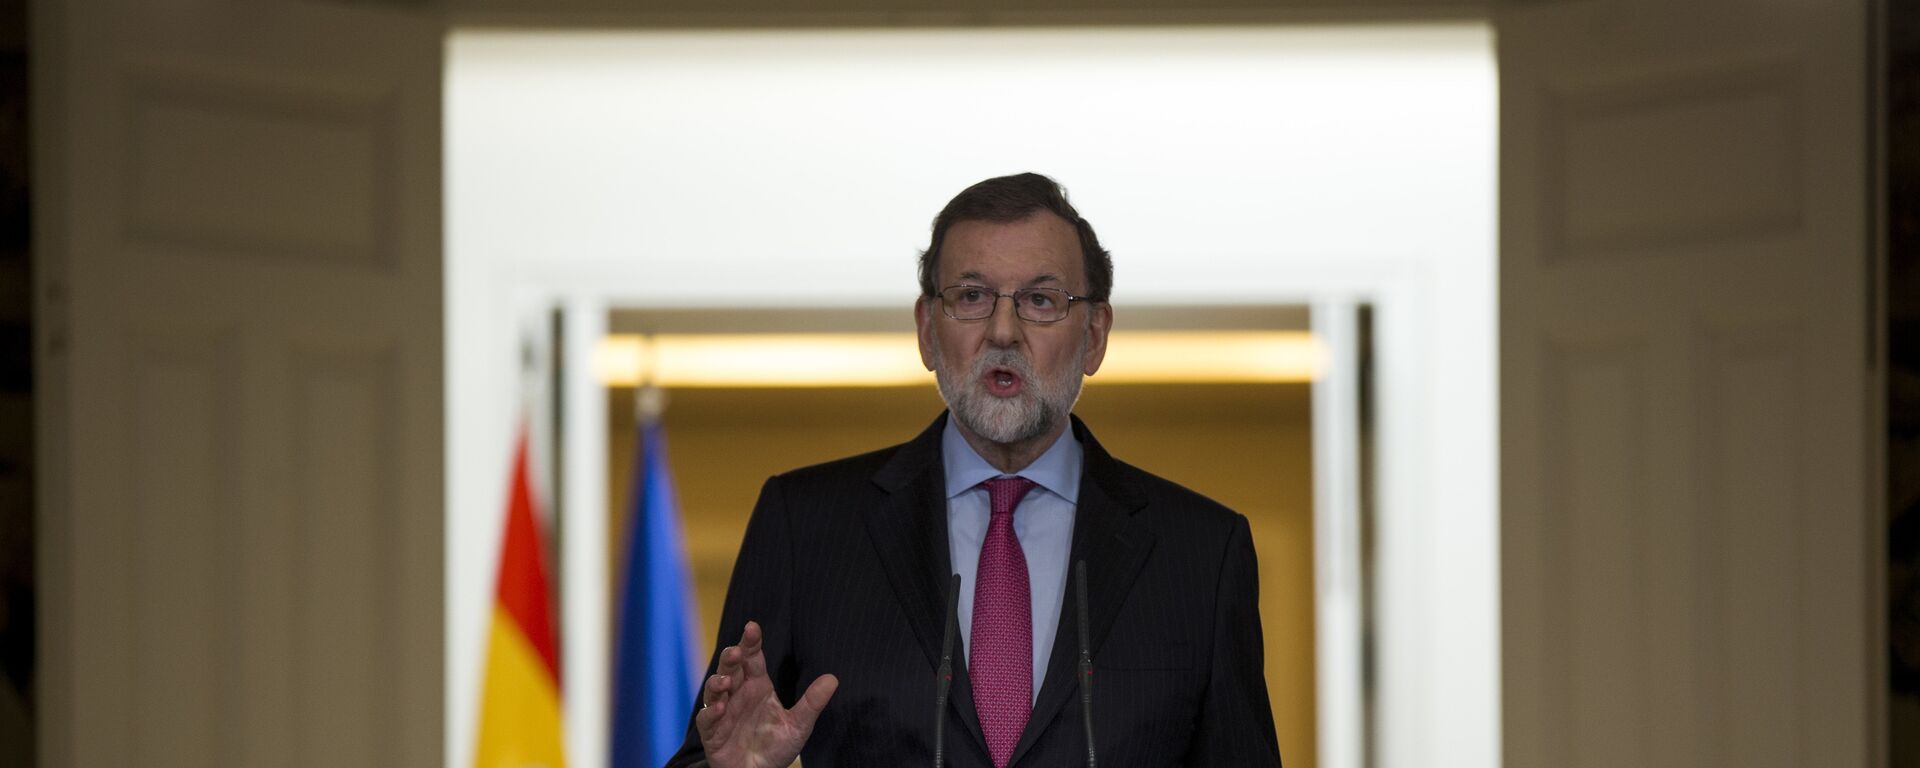 Mariano Rajoy, el presidente del Gobierno español - Sputnik Mundo, 1920, 08.02.2021